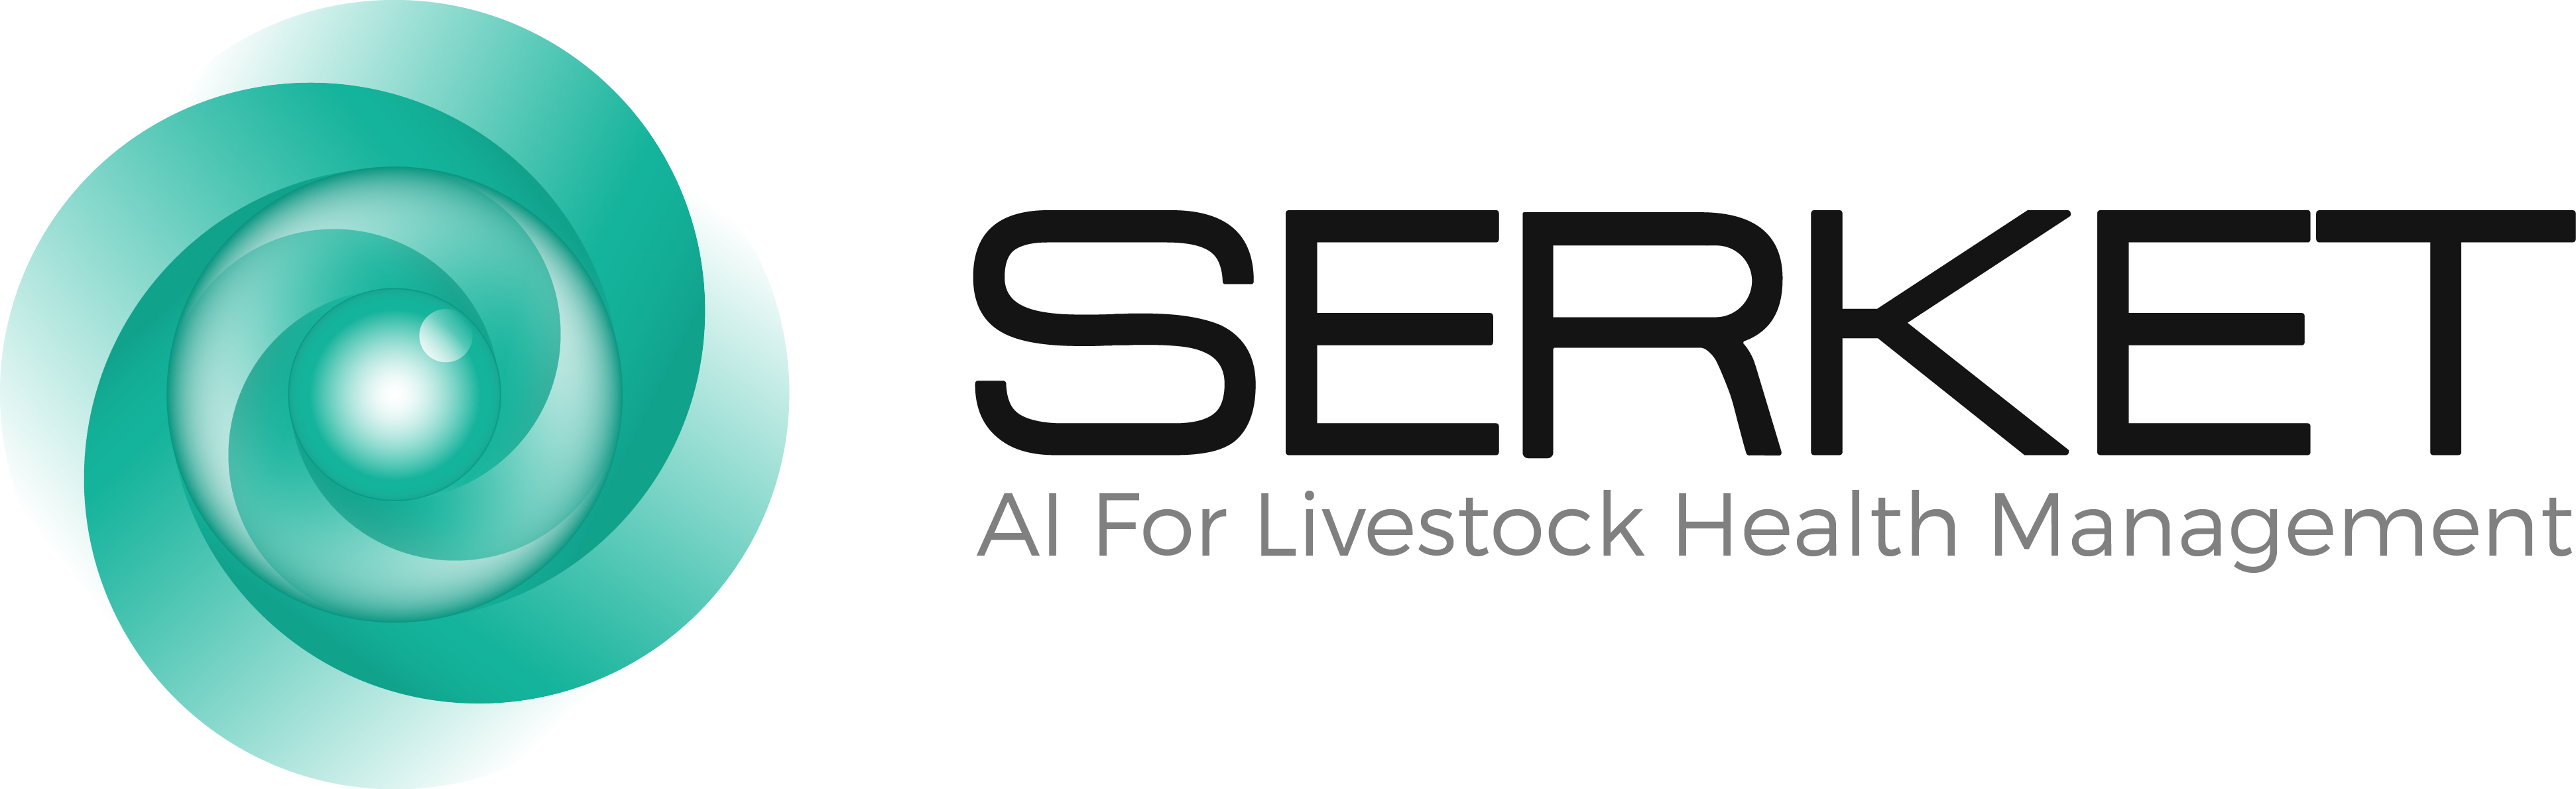 Serket logo